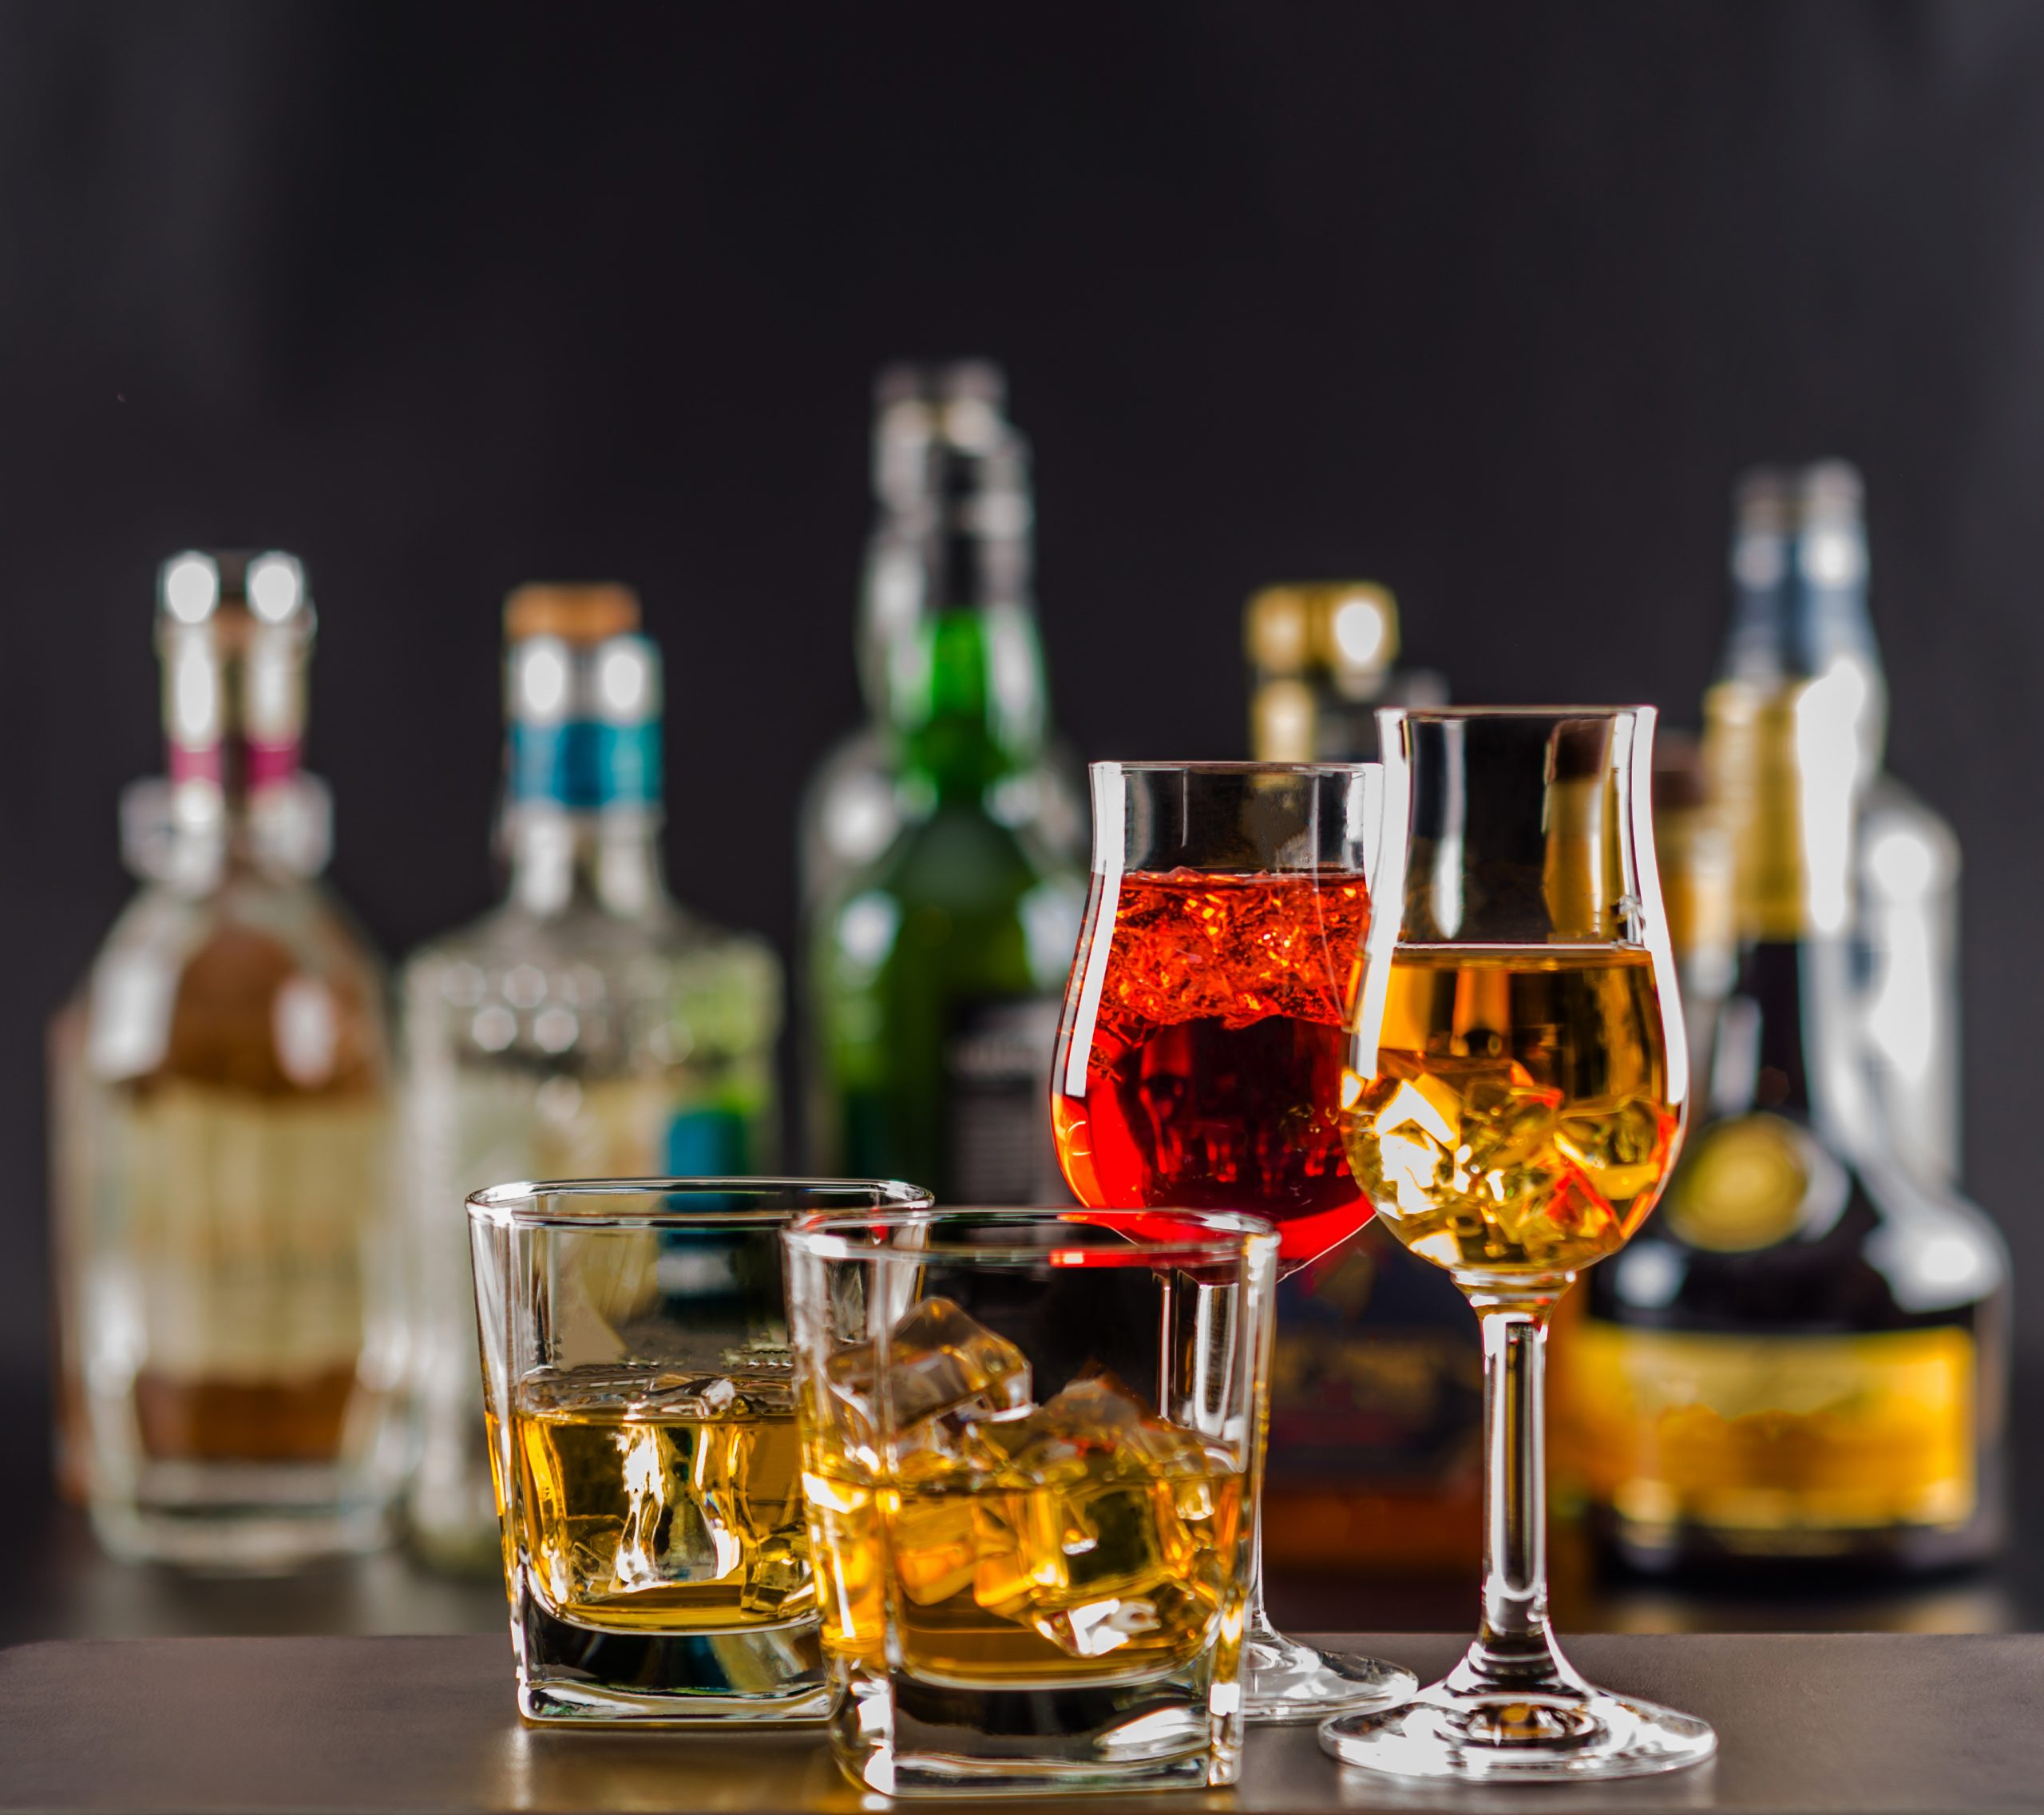 4Cop Liquor License Requirements